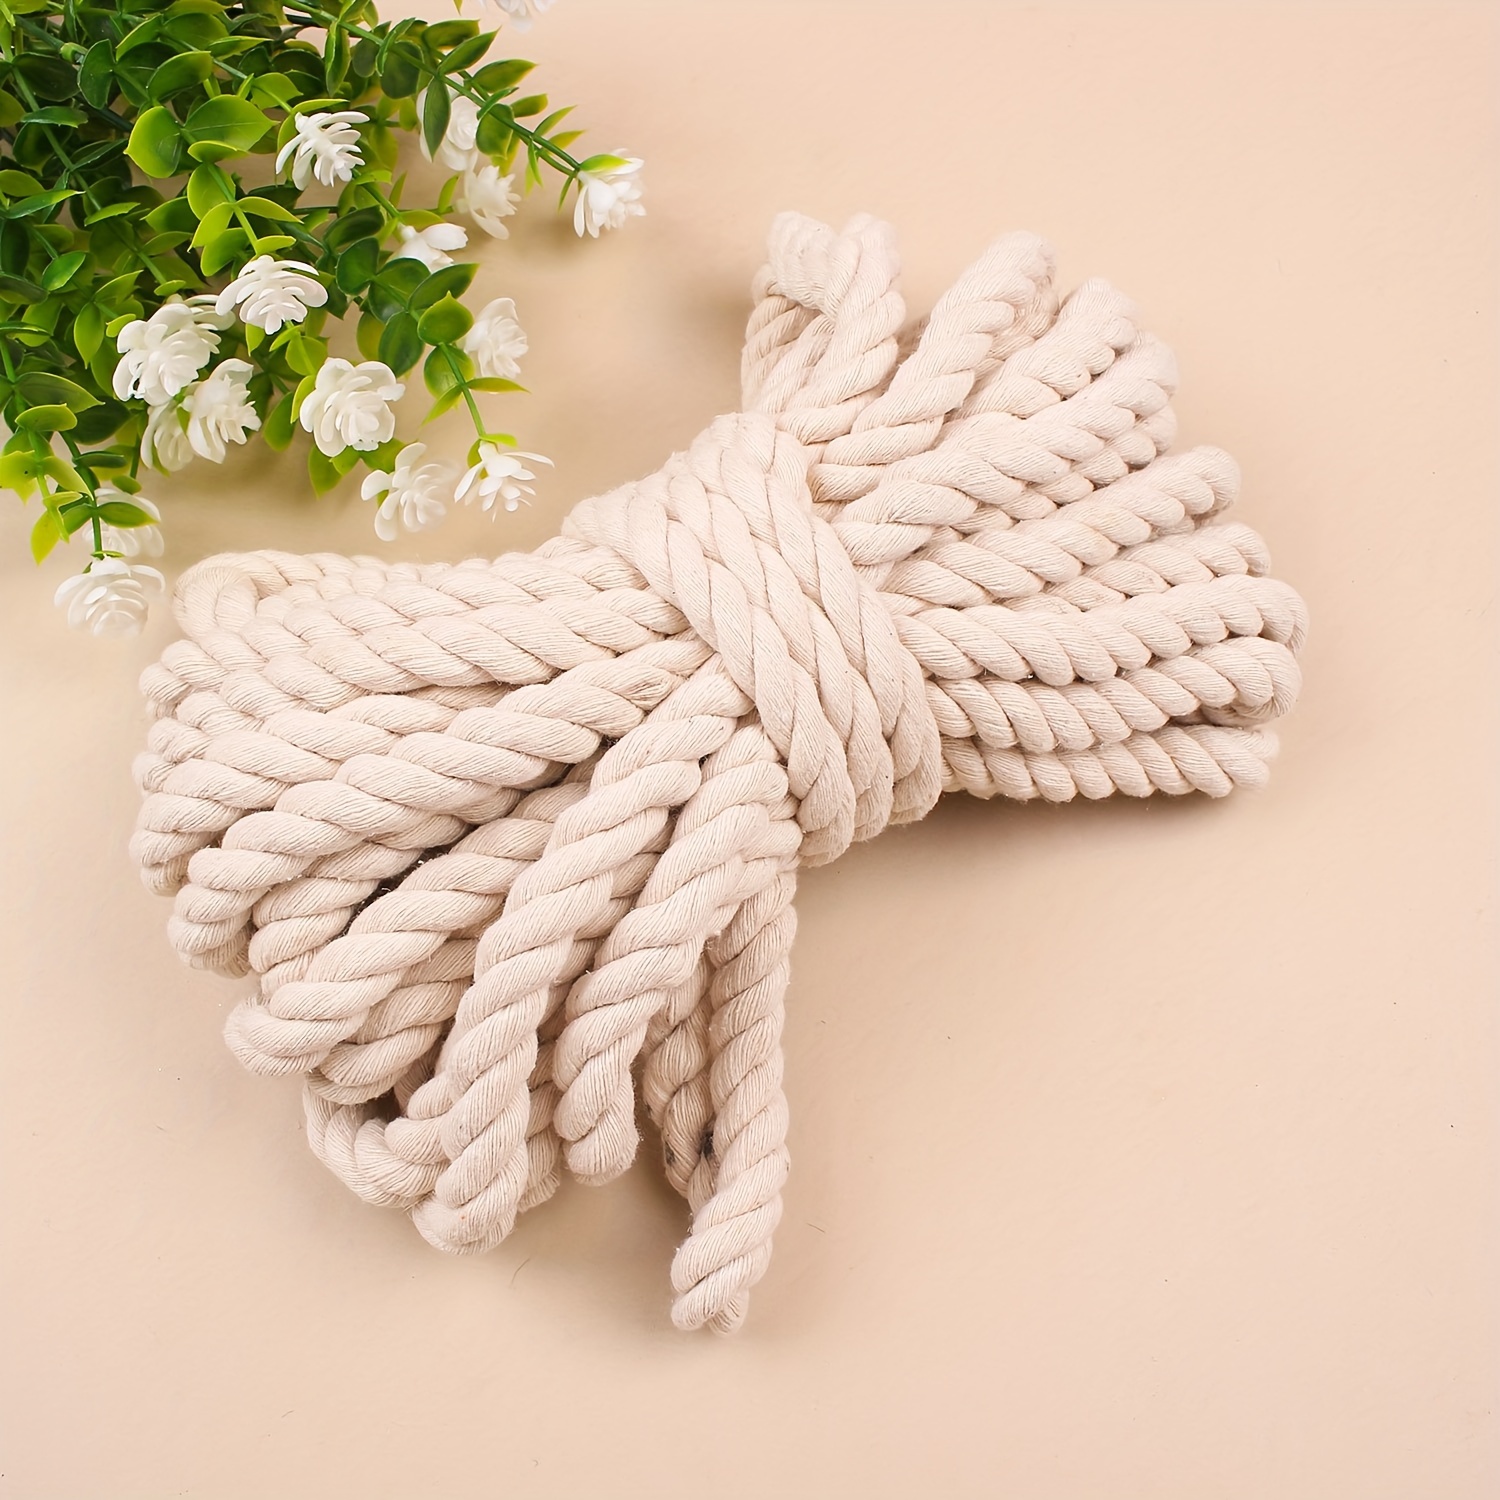 Chunky Laces Cordones de cuerda de algodón de 10 mm de grosor, cordones  blancos con puntas blancas | Cordones de cuerda gruesa trenzada natural  para